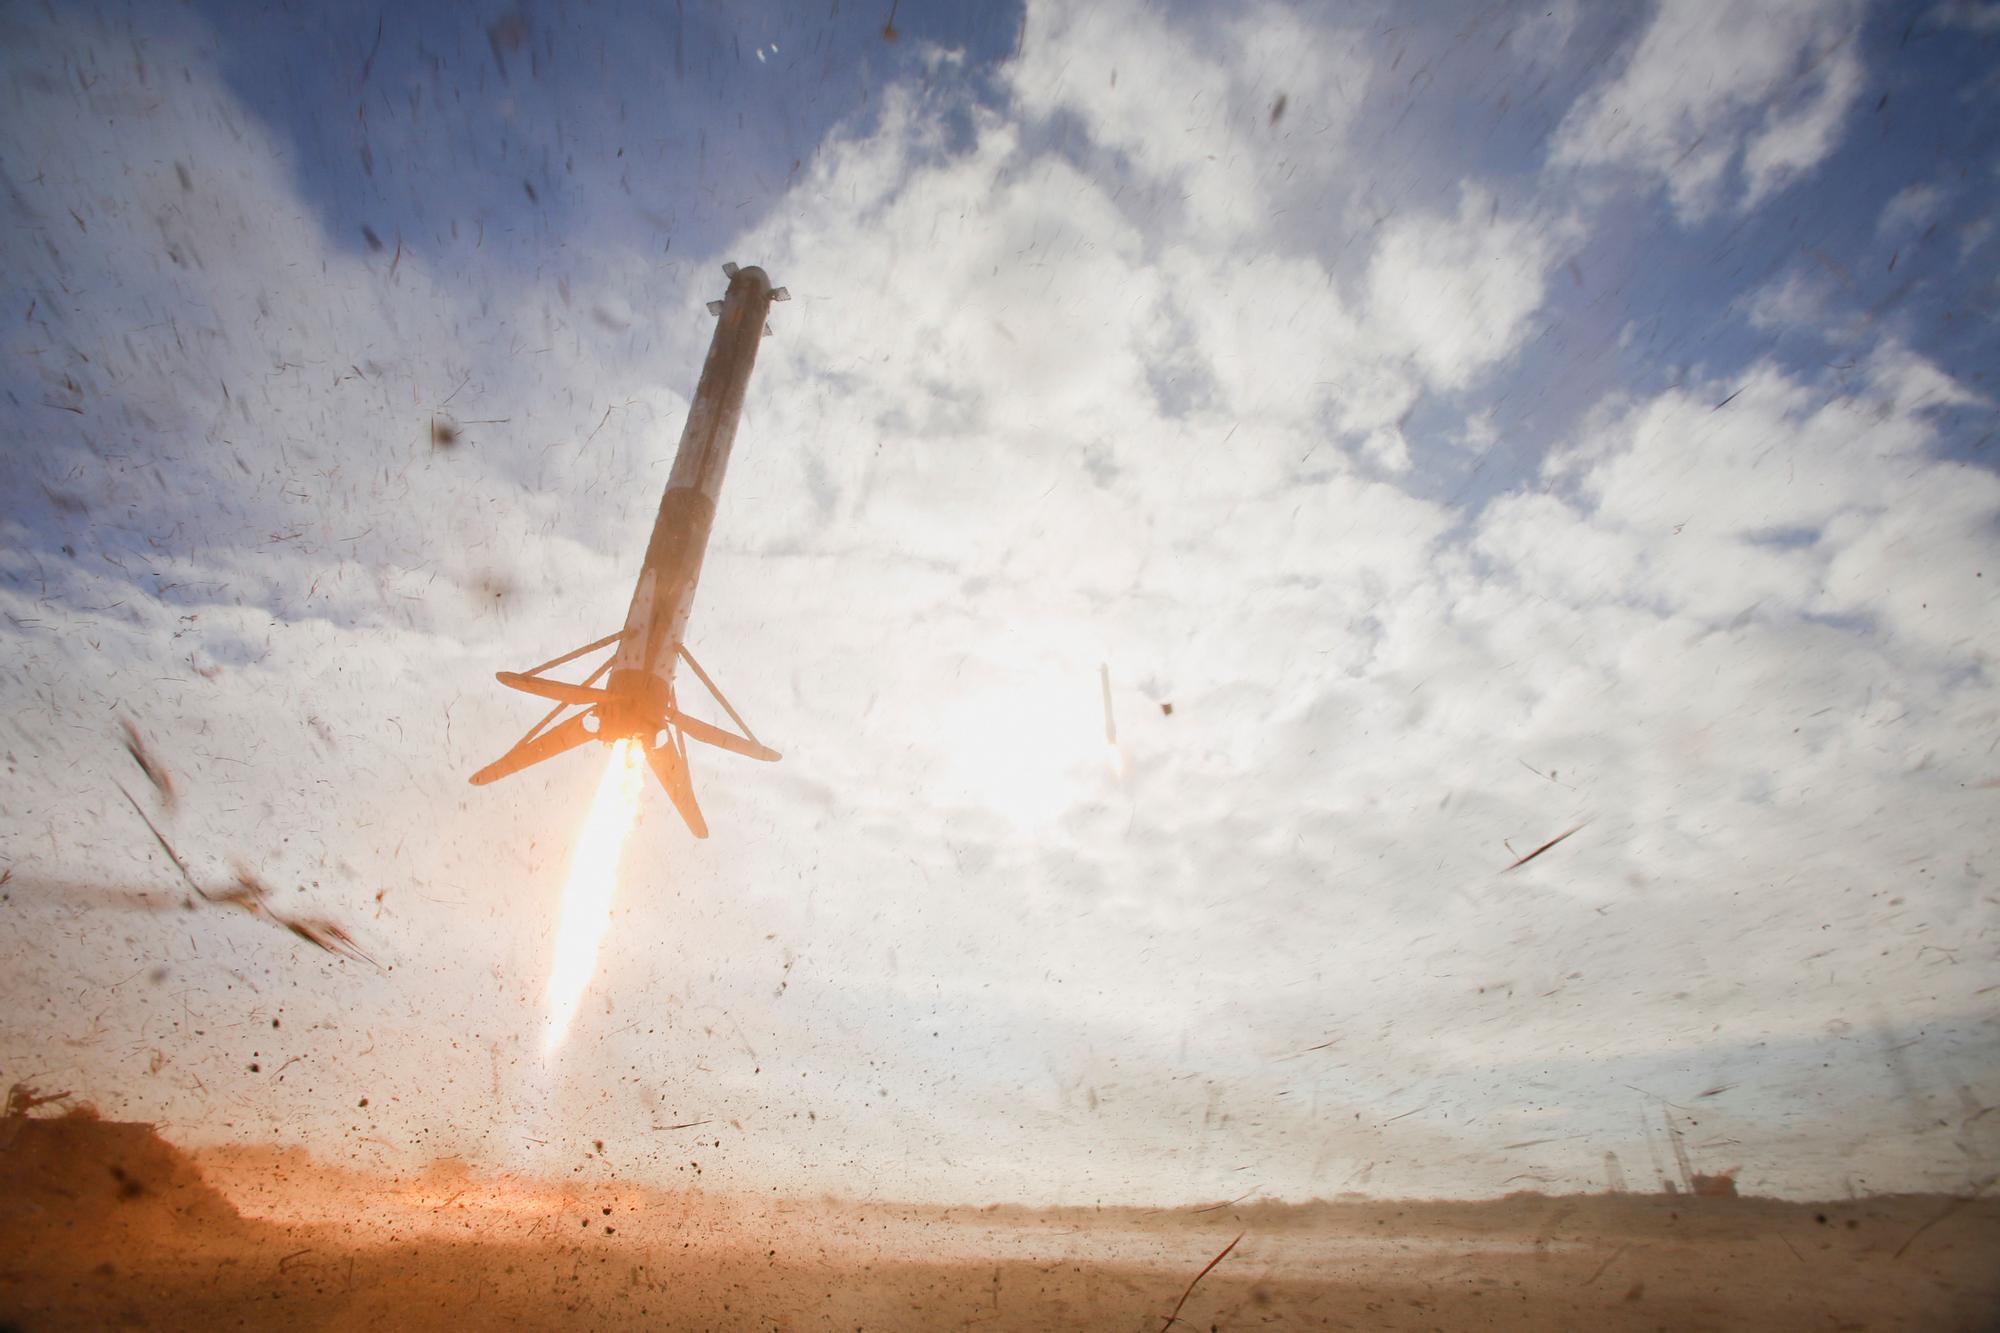 El cohete Falcon, encargado de poner en órbita el nanosatélite Minairó, durante una misión espacial.